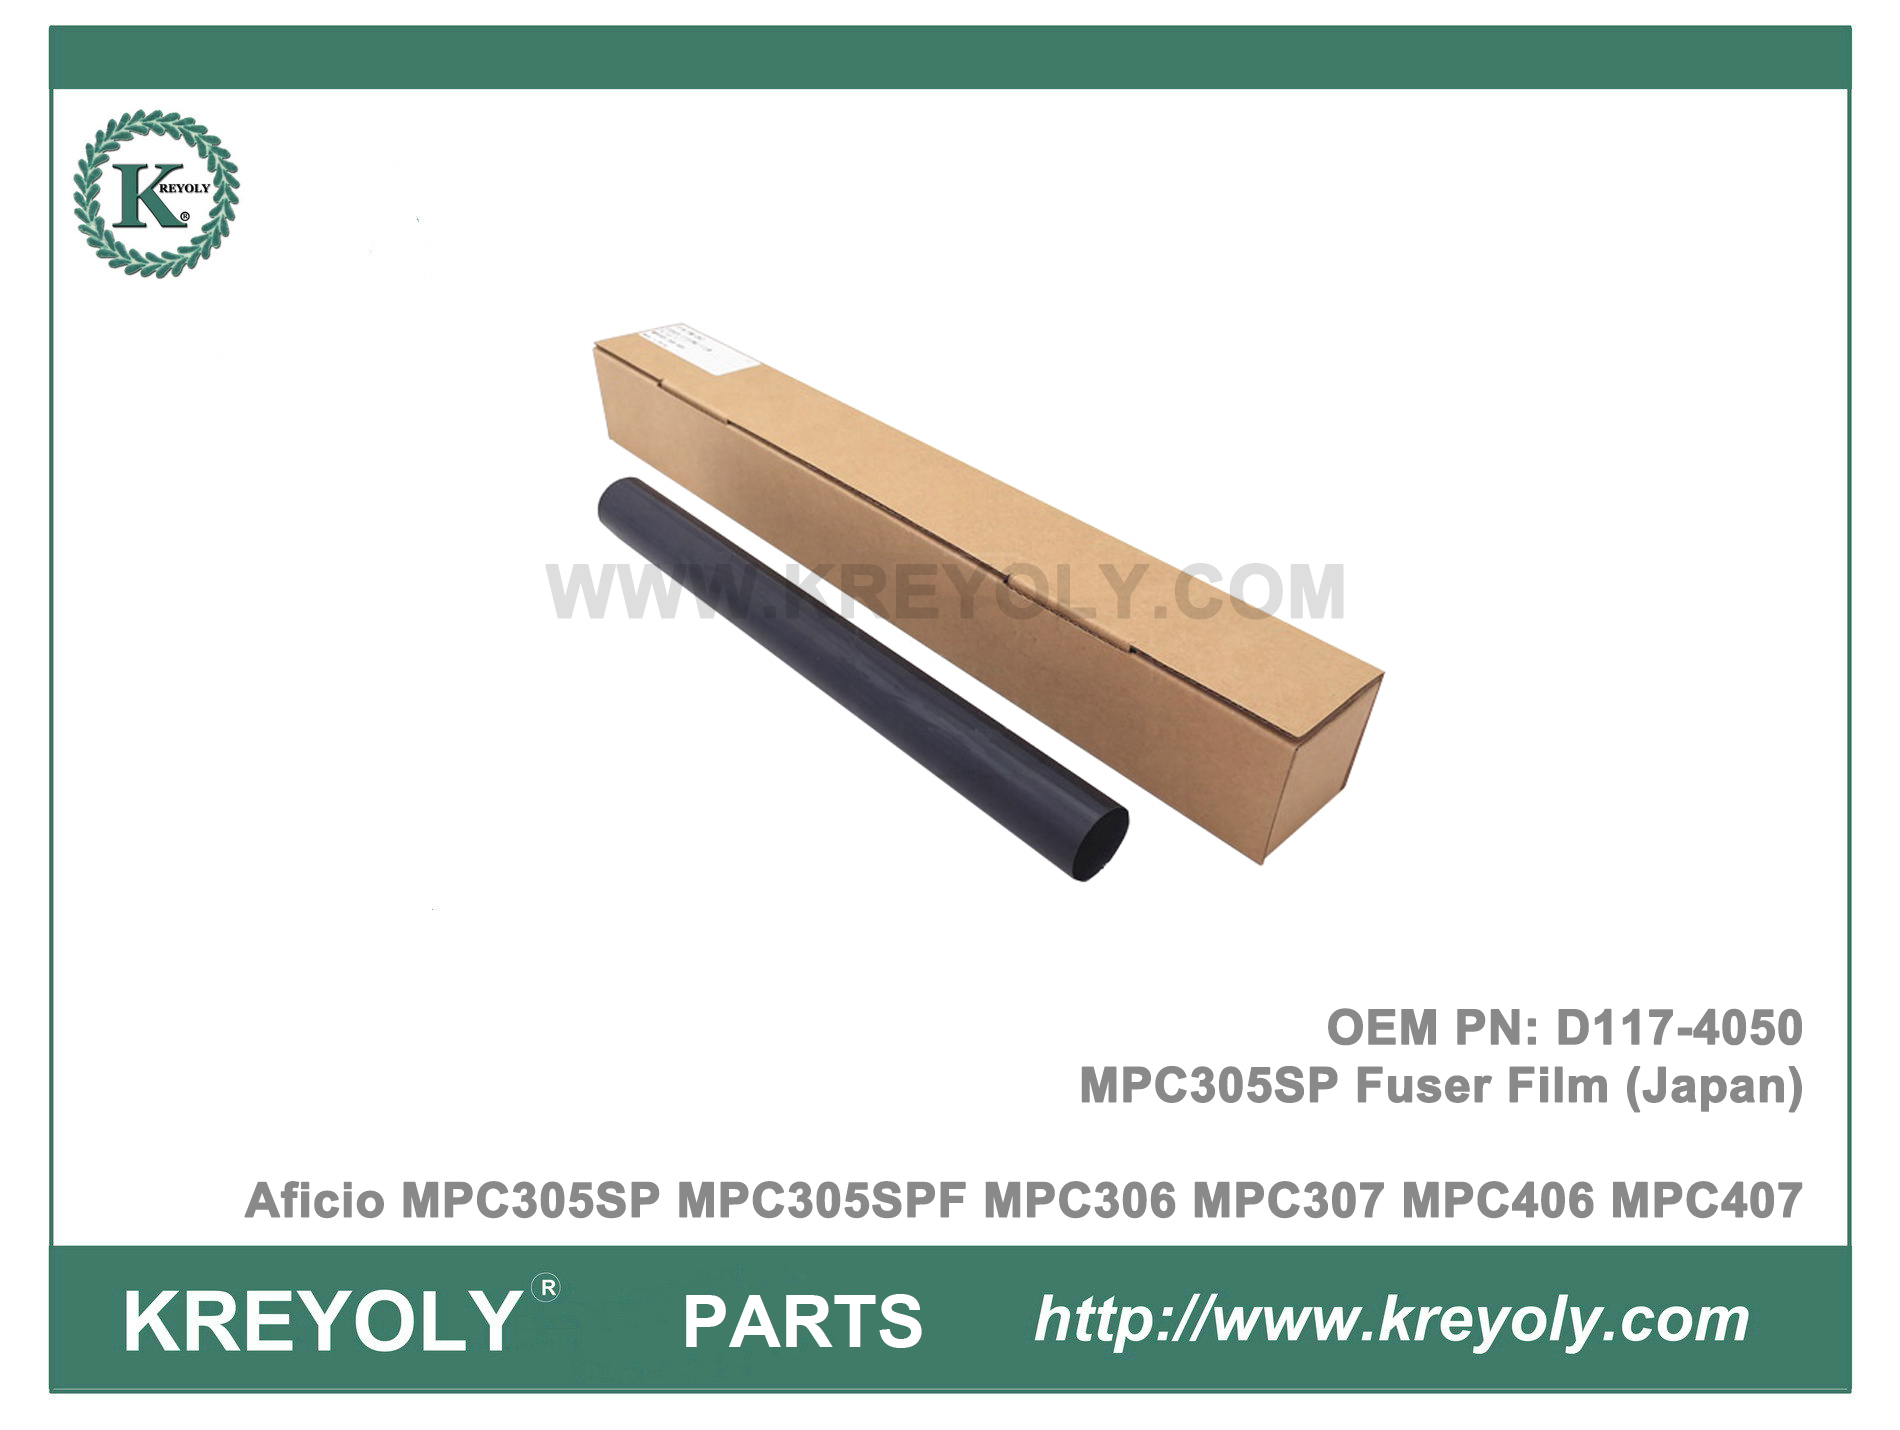 D117-4050 MPC305 Película de fijación del fusor Rioch Aficio MPC305SP MPC305SPF MPC306 MPC307 MPC406 MPC407